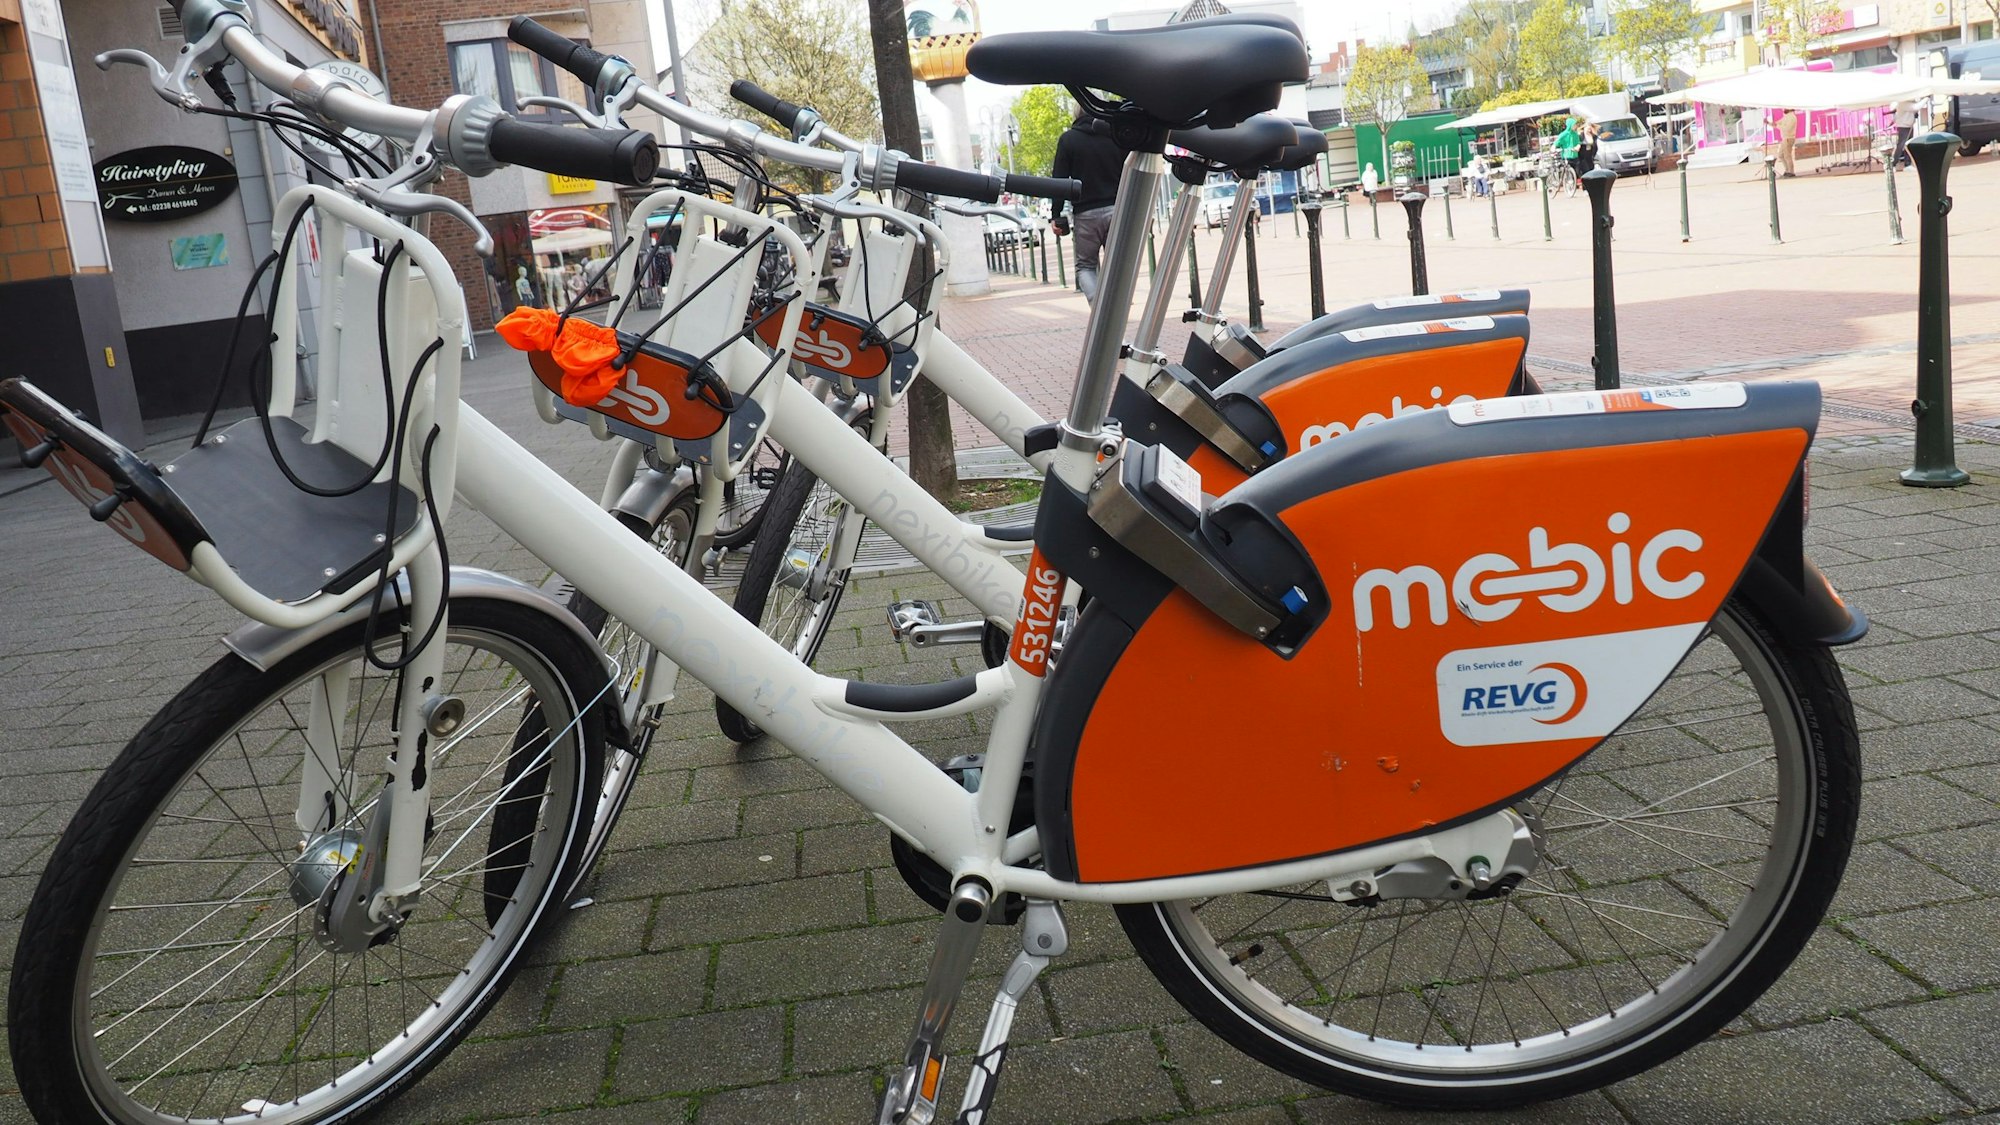 Zu sehen sind weiße Mietfahrräder mit dem orangefarbenen Schriftzug Mobic.